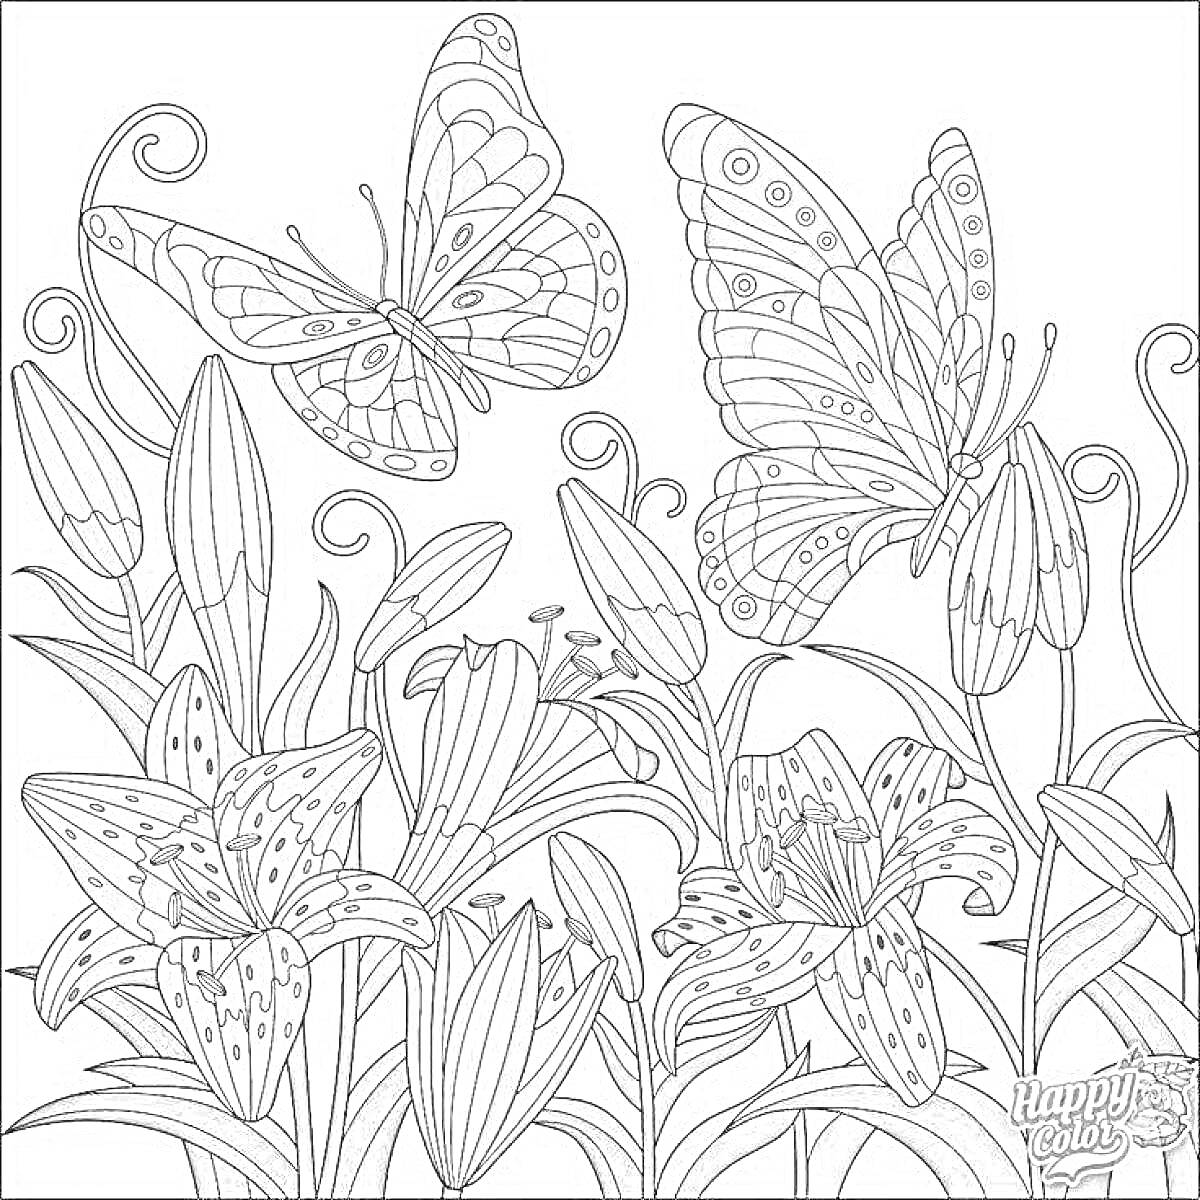 Раскраска Бабочки и цветы: две бабочки над цветами, включающими лилии и листья